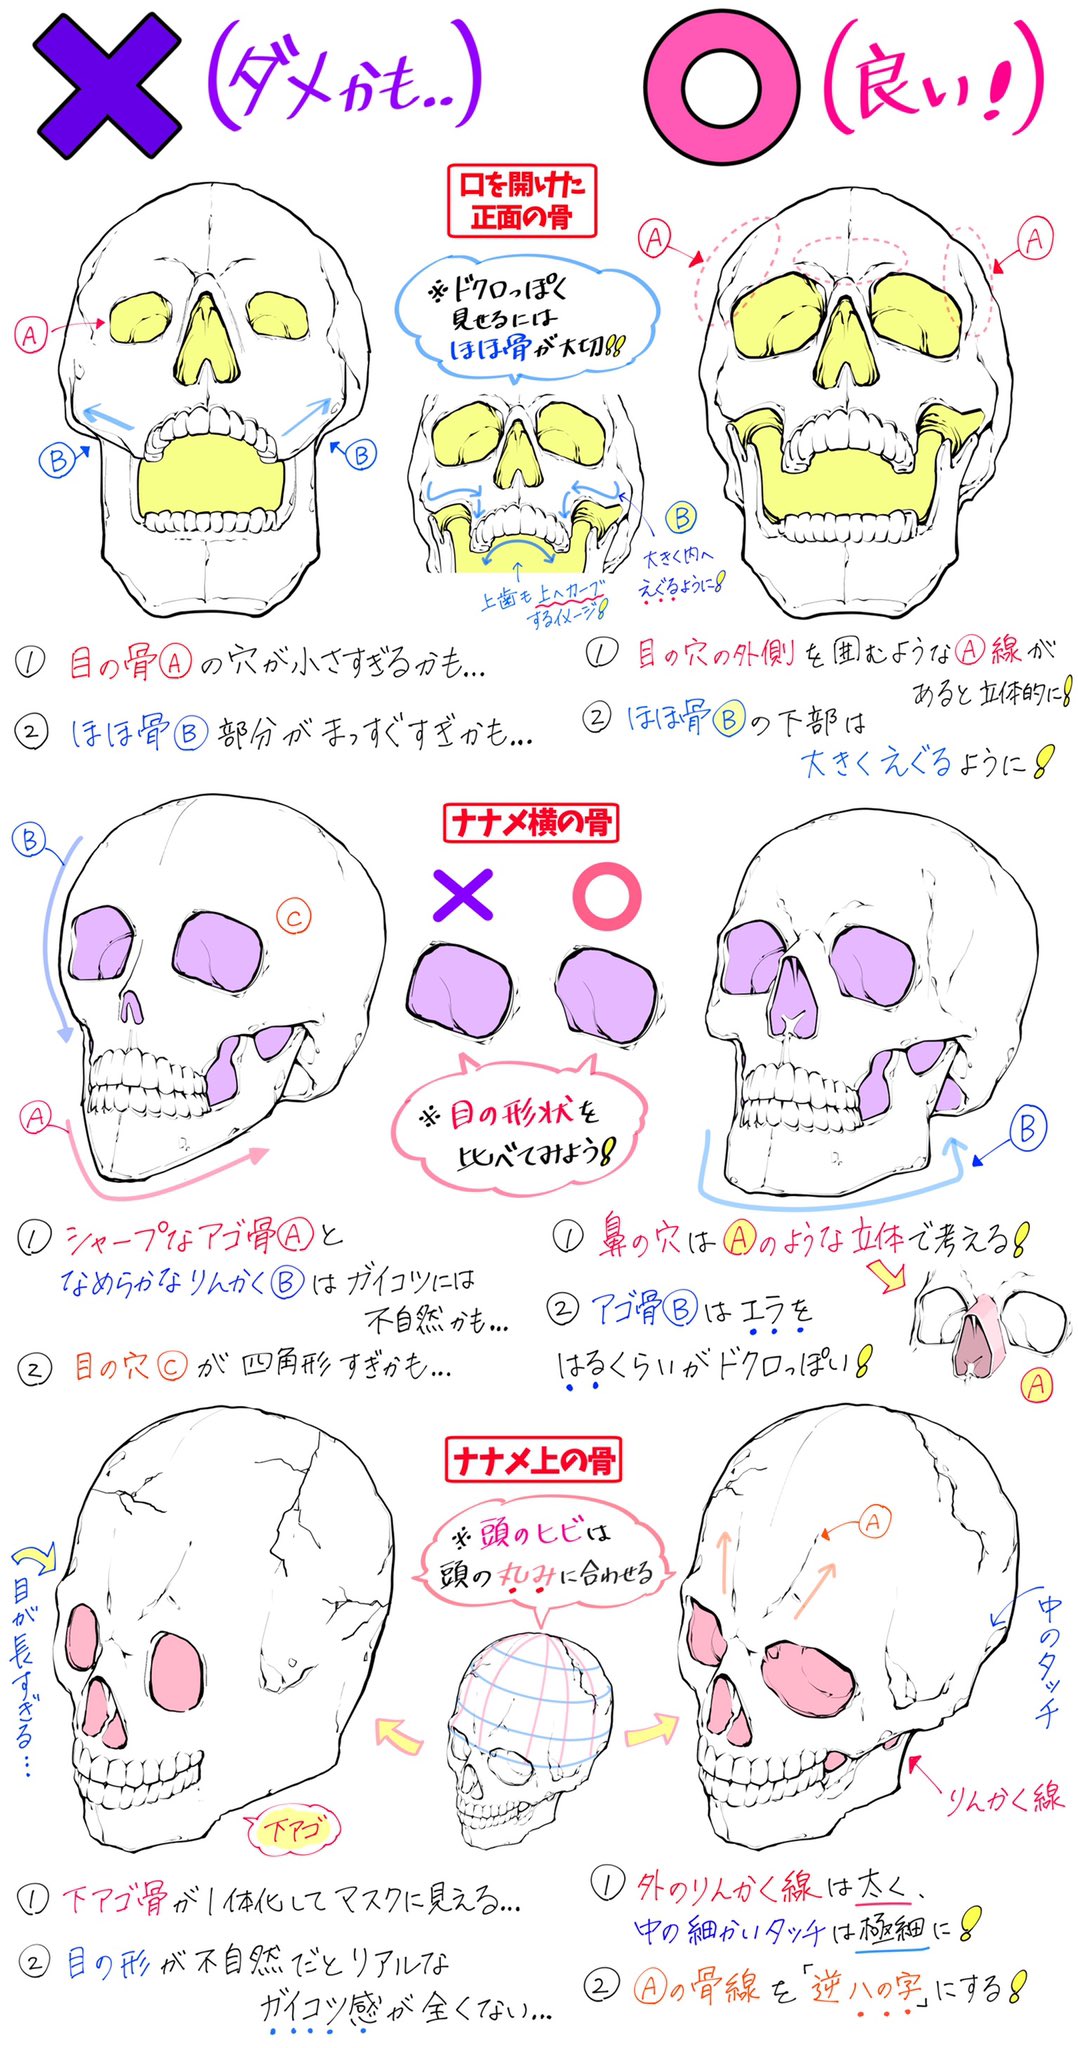 吉村拓也 イラスト講座 骸骨の描き方 骨の角度やドクロ絵 が上達する ダメかも と 良いかも T Co Zgxrisexuf Twitter